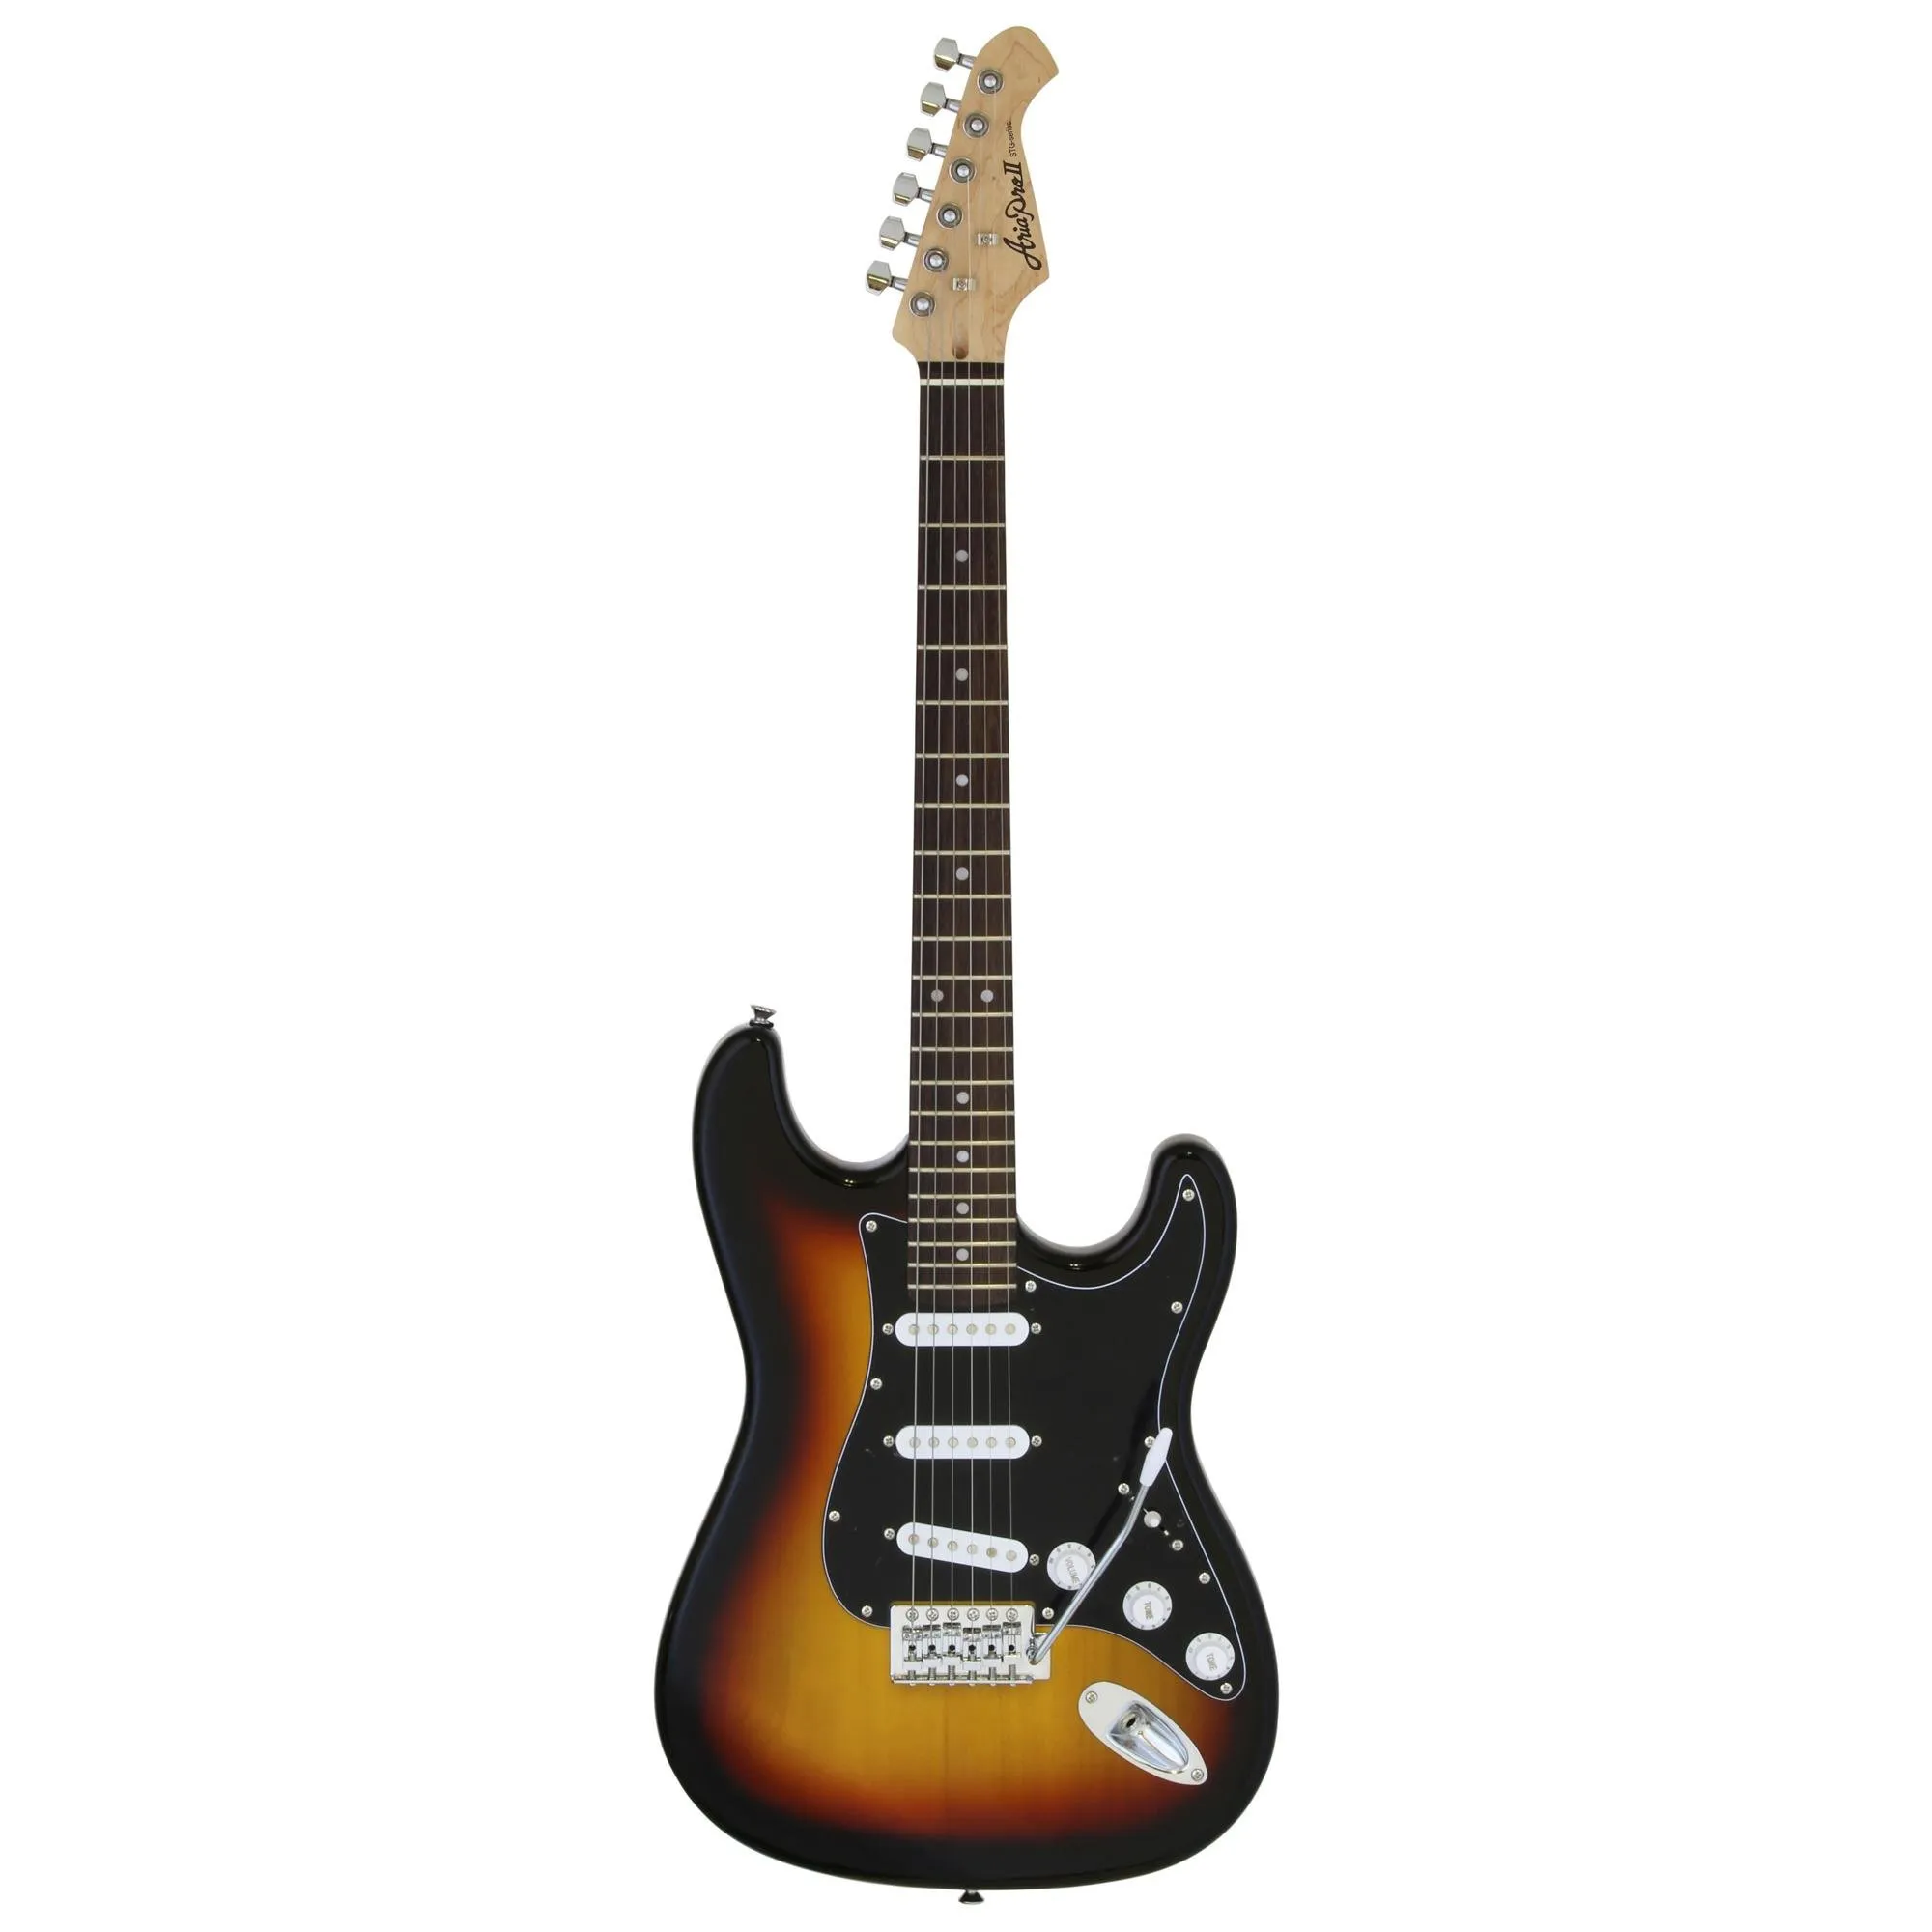 Guitarra Aria STG-003/SPL 3 Tone Sunburst por 1.021,99 à vista no boleto/pix ou parcele em até 12x sem juros. Compre na loja Mundomax!